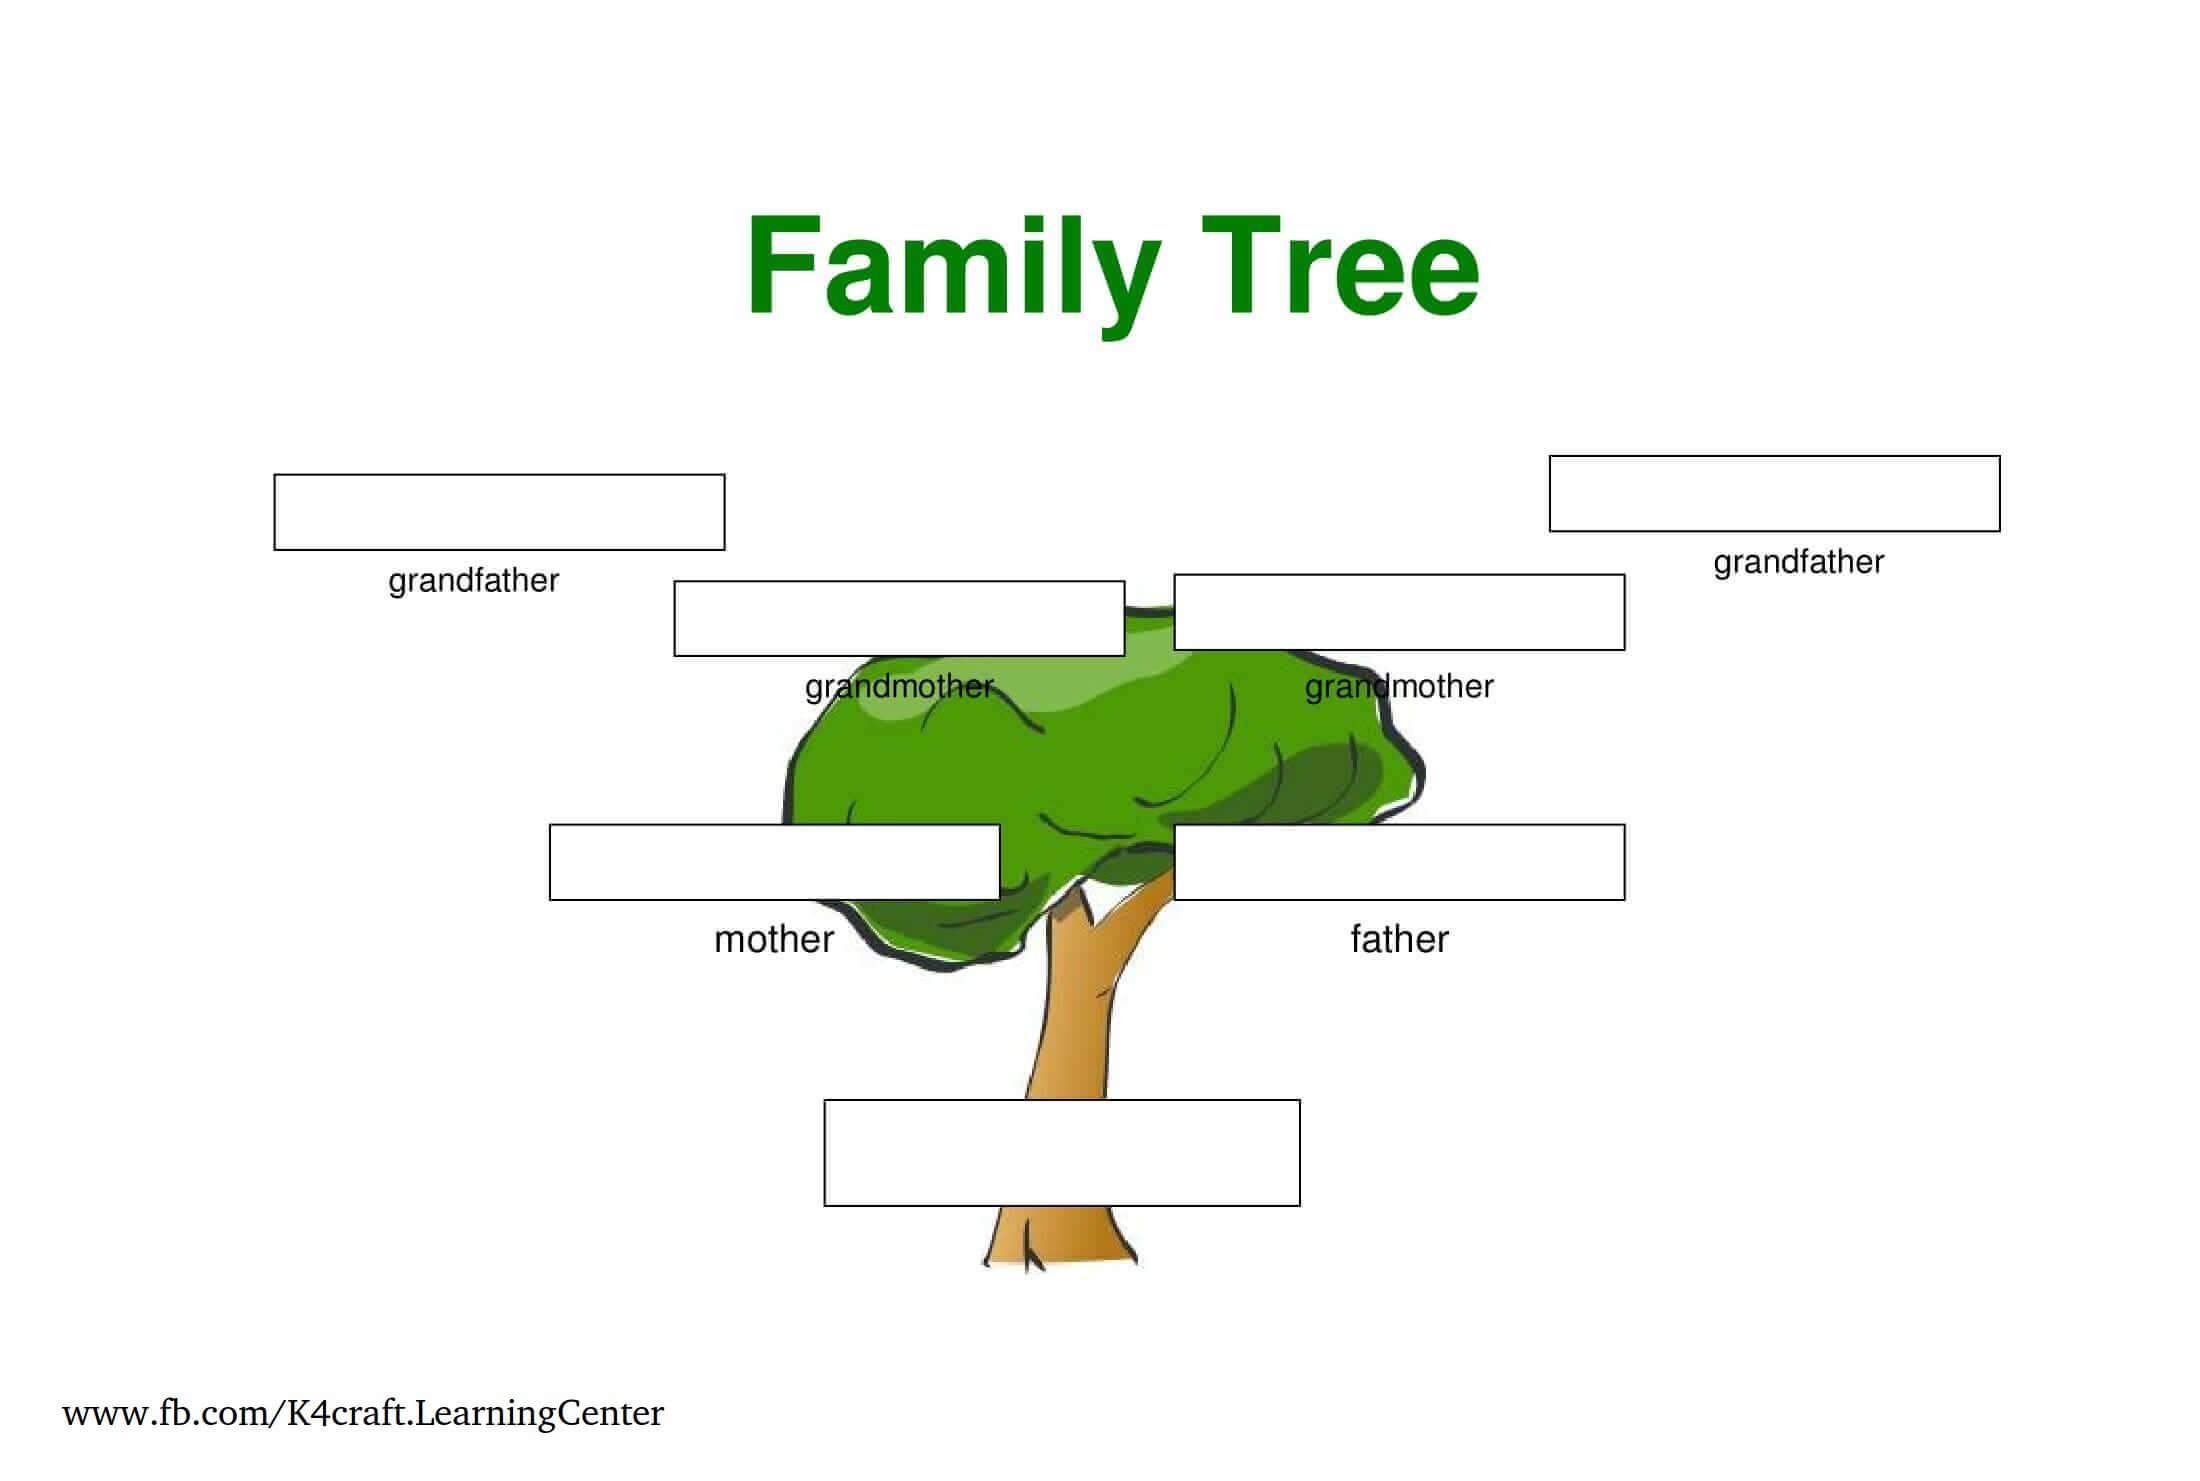 Three Generation - Family Tree Templates For Kids - Templates for constructing a Family Tree for Kids 